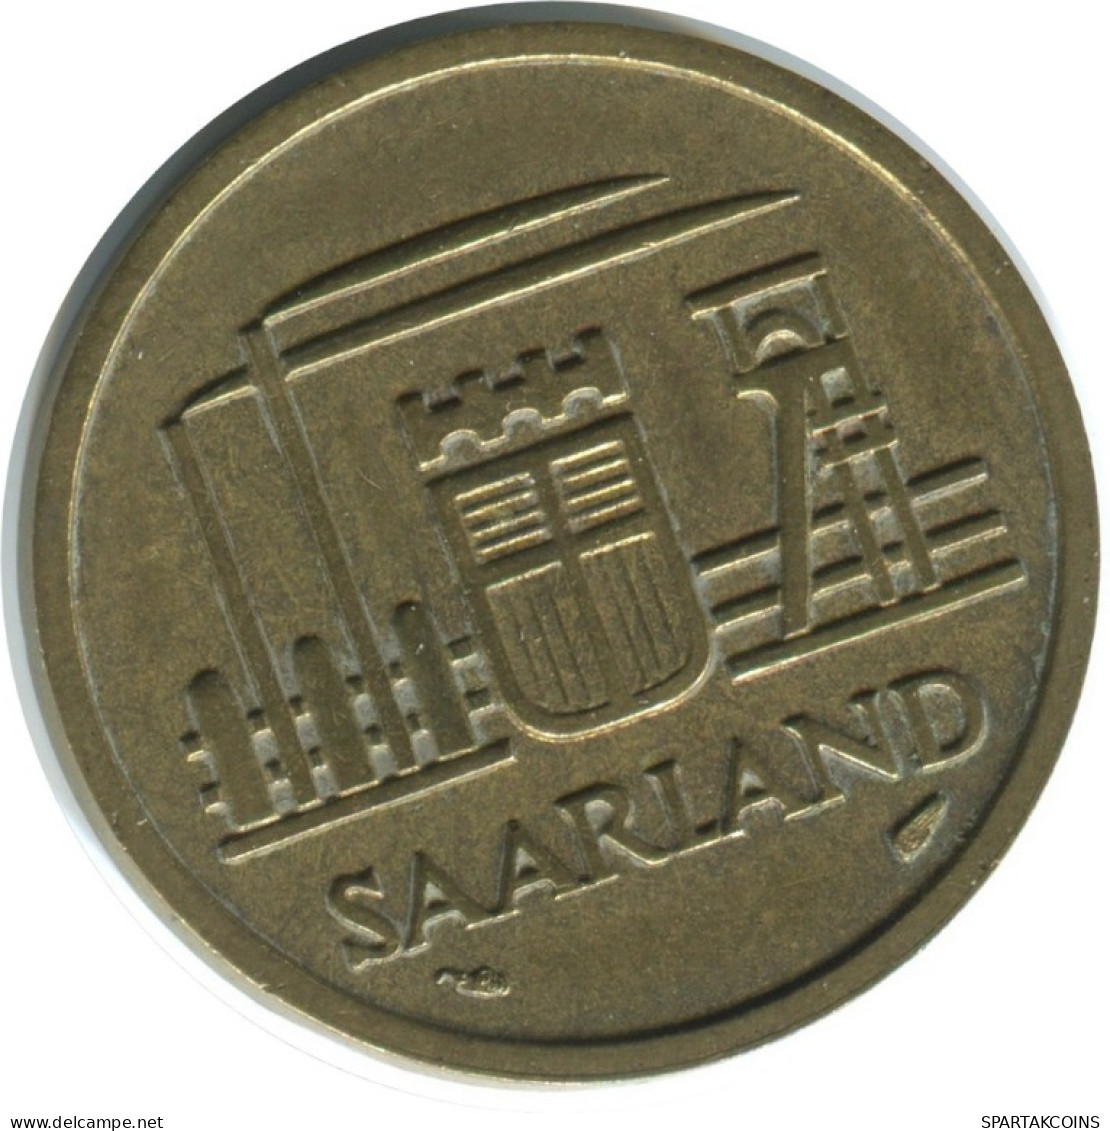 20 FRANKEN 1954 SAARLAND GERMANY Coin #AD779.9.U.A - 20 Franken